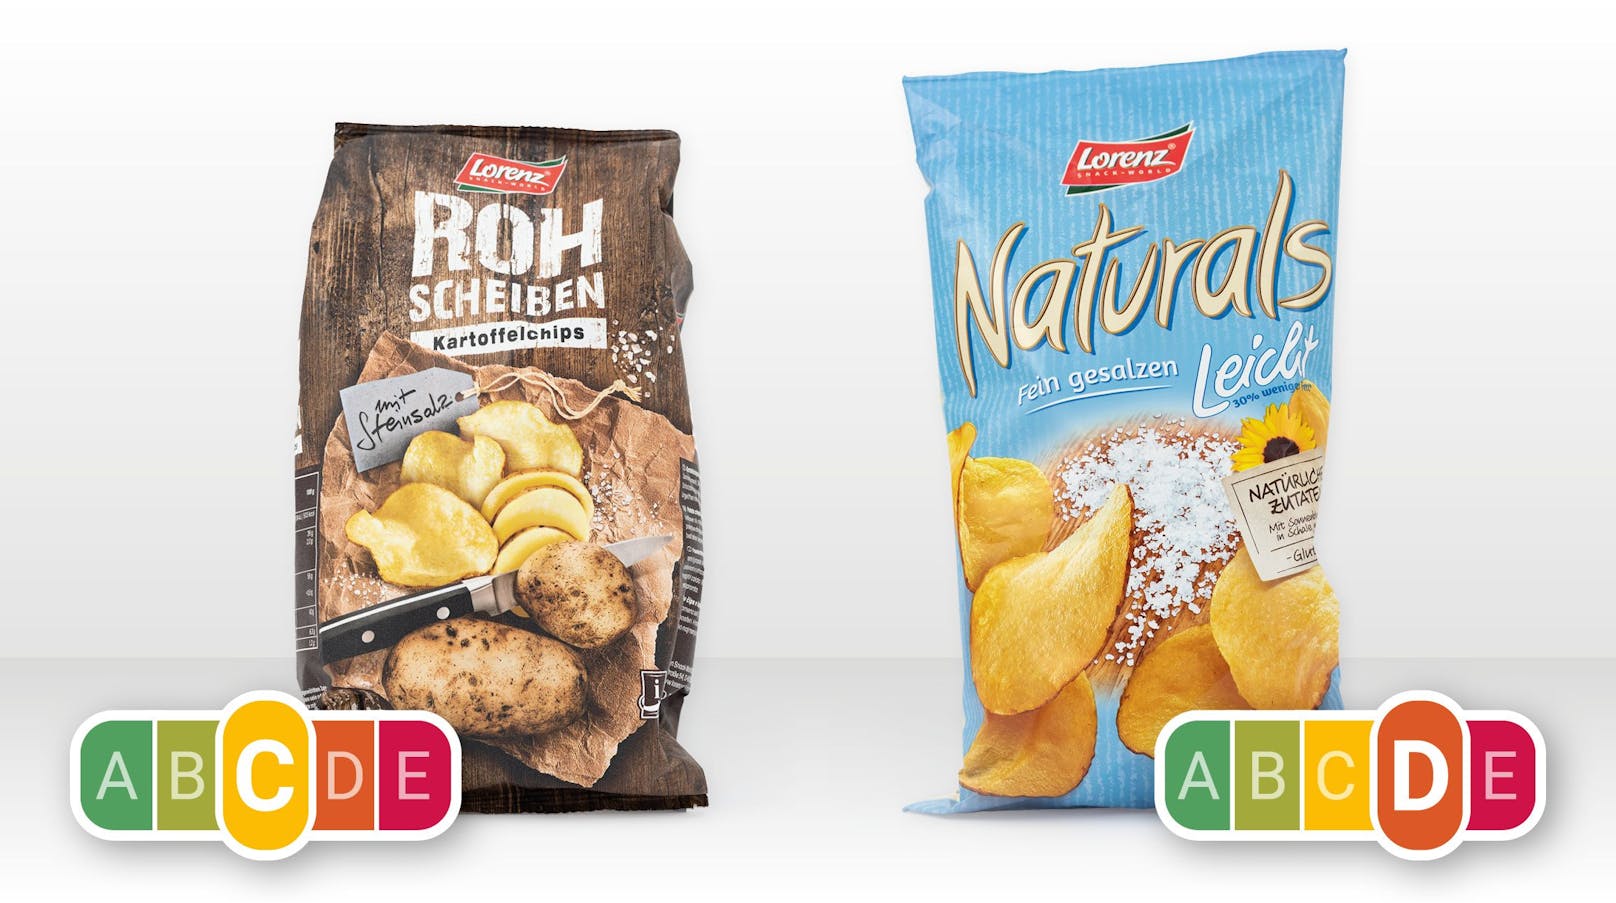 Der Nutri-Score vergleicht etwa Chips. Obwohl die rechte Packung "30 Prozent weniger Fett" hat, ist sie ungesünder, weil sie mehr Salz hat.